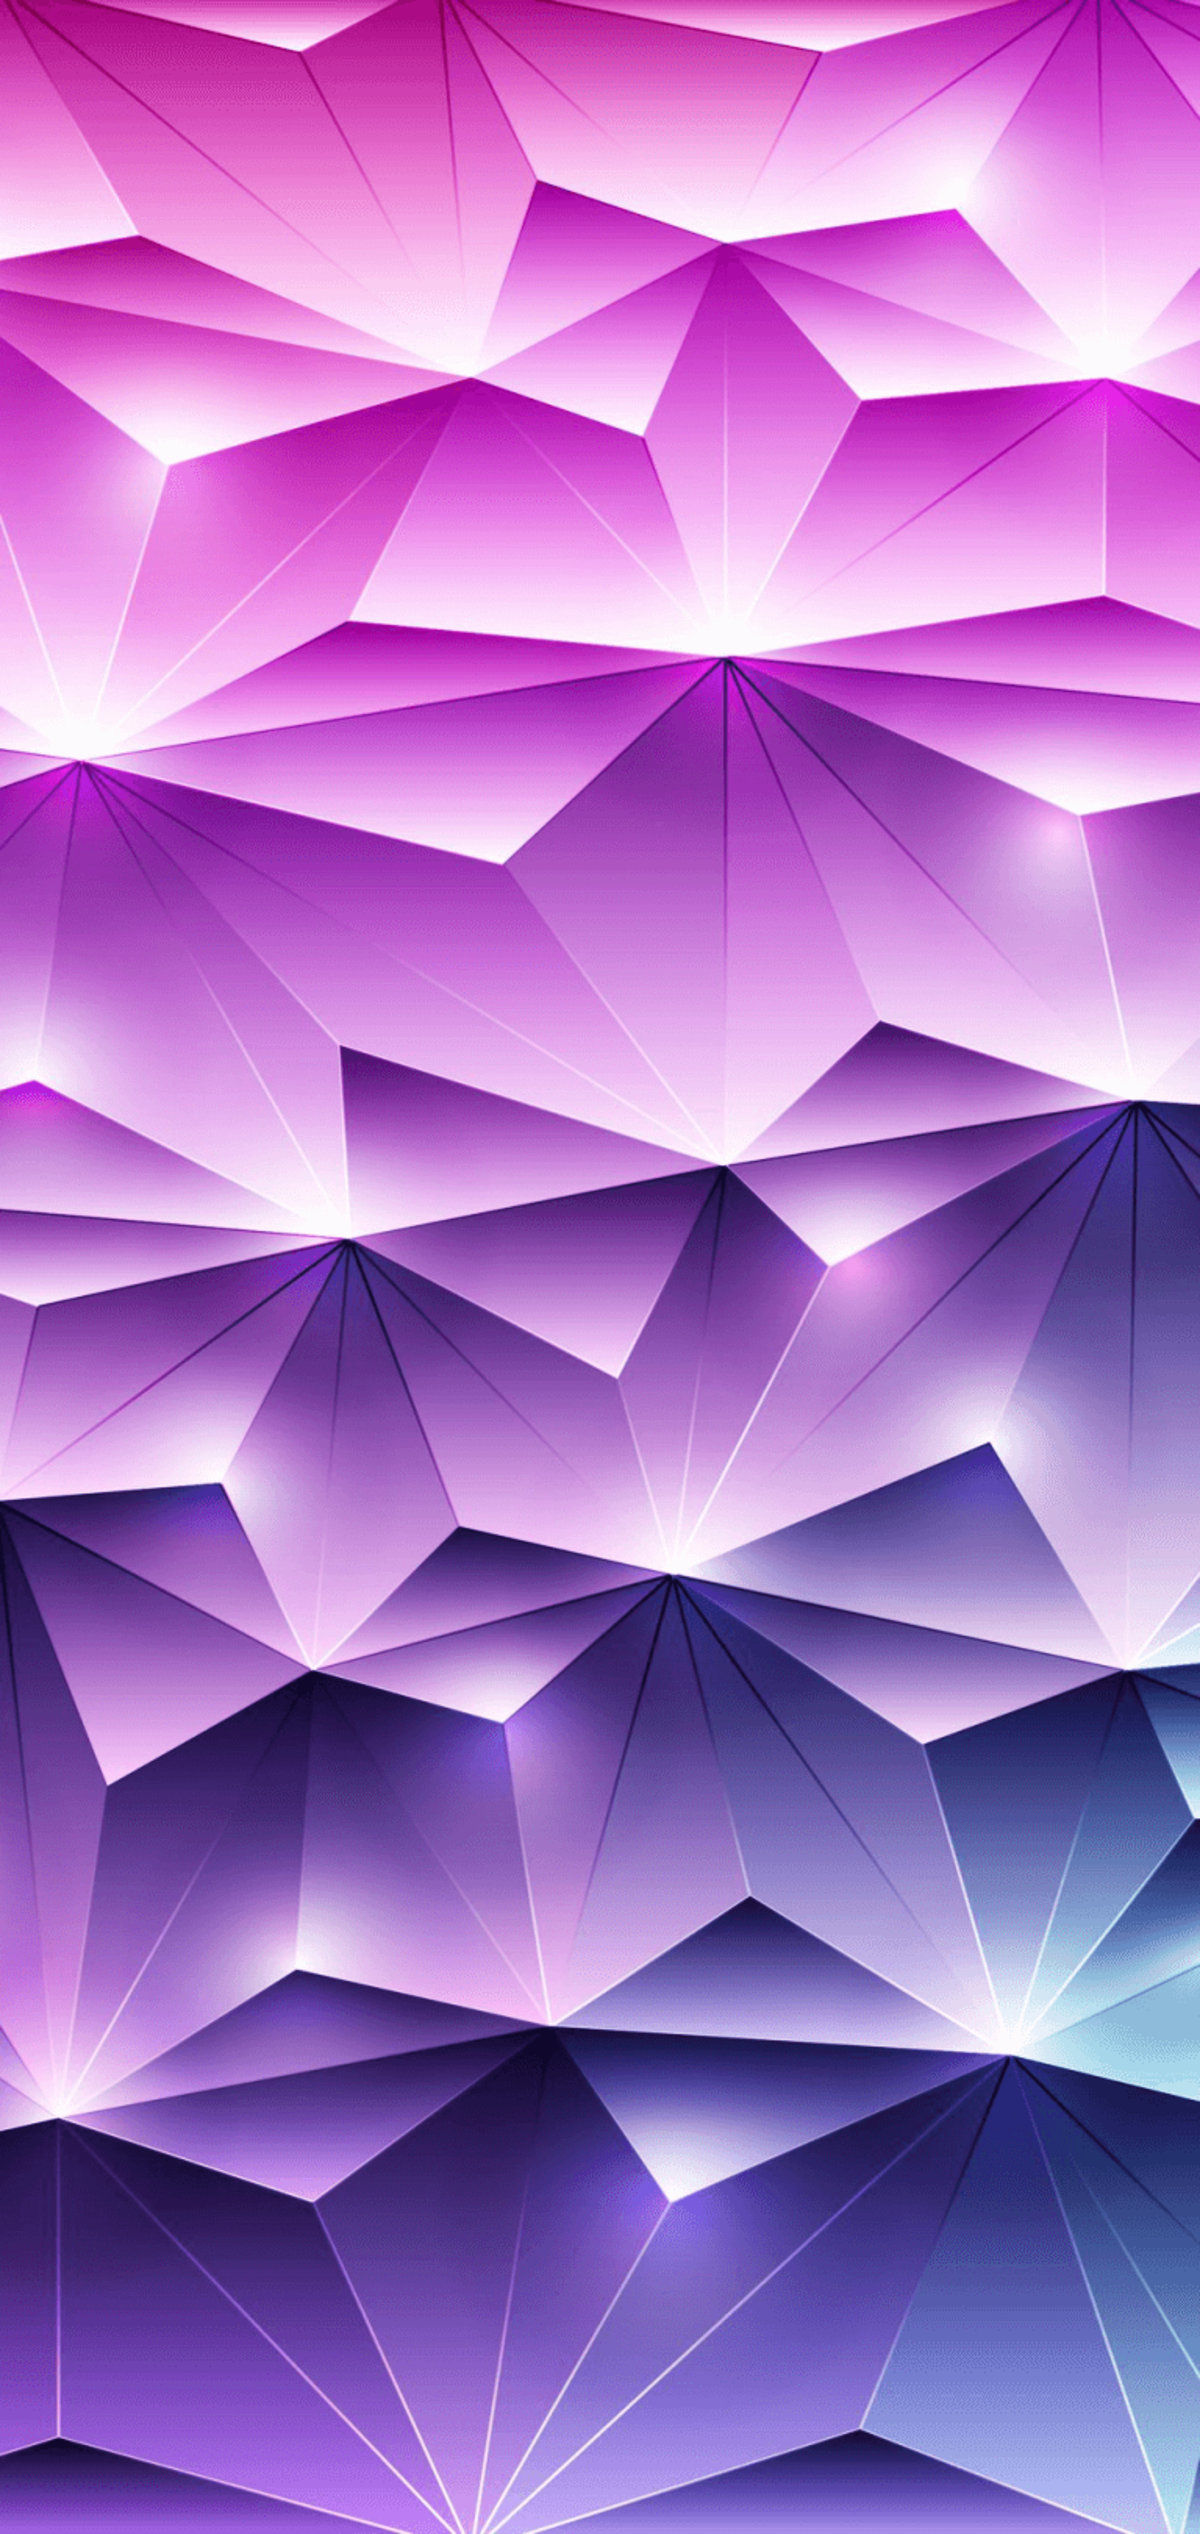 La mejor colección de wallpapers abstractos y geométricos para tu iPhone